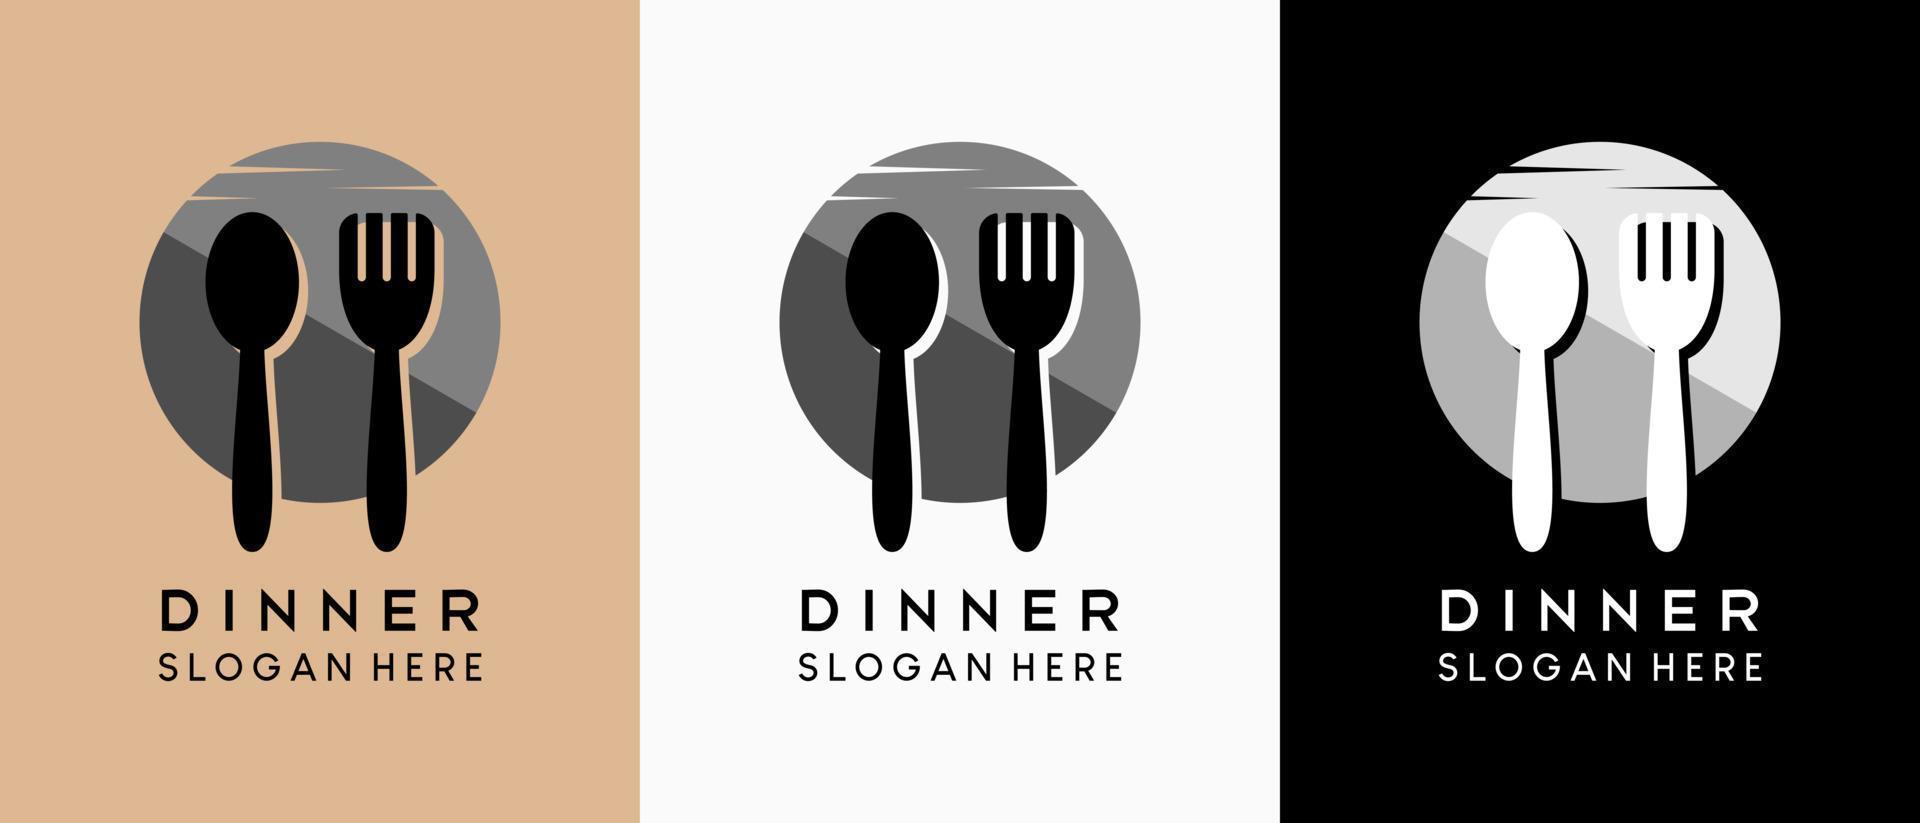 design de logotipo de jantar com um conceito criativo, perfeito para um negócio de restaurante de jantar. silhueta de colher e garfo no ícone da lua vetor